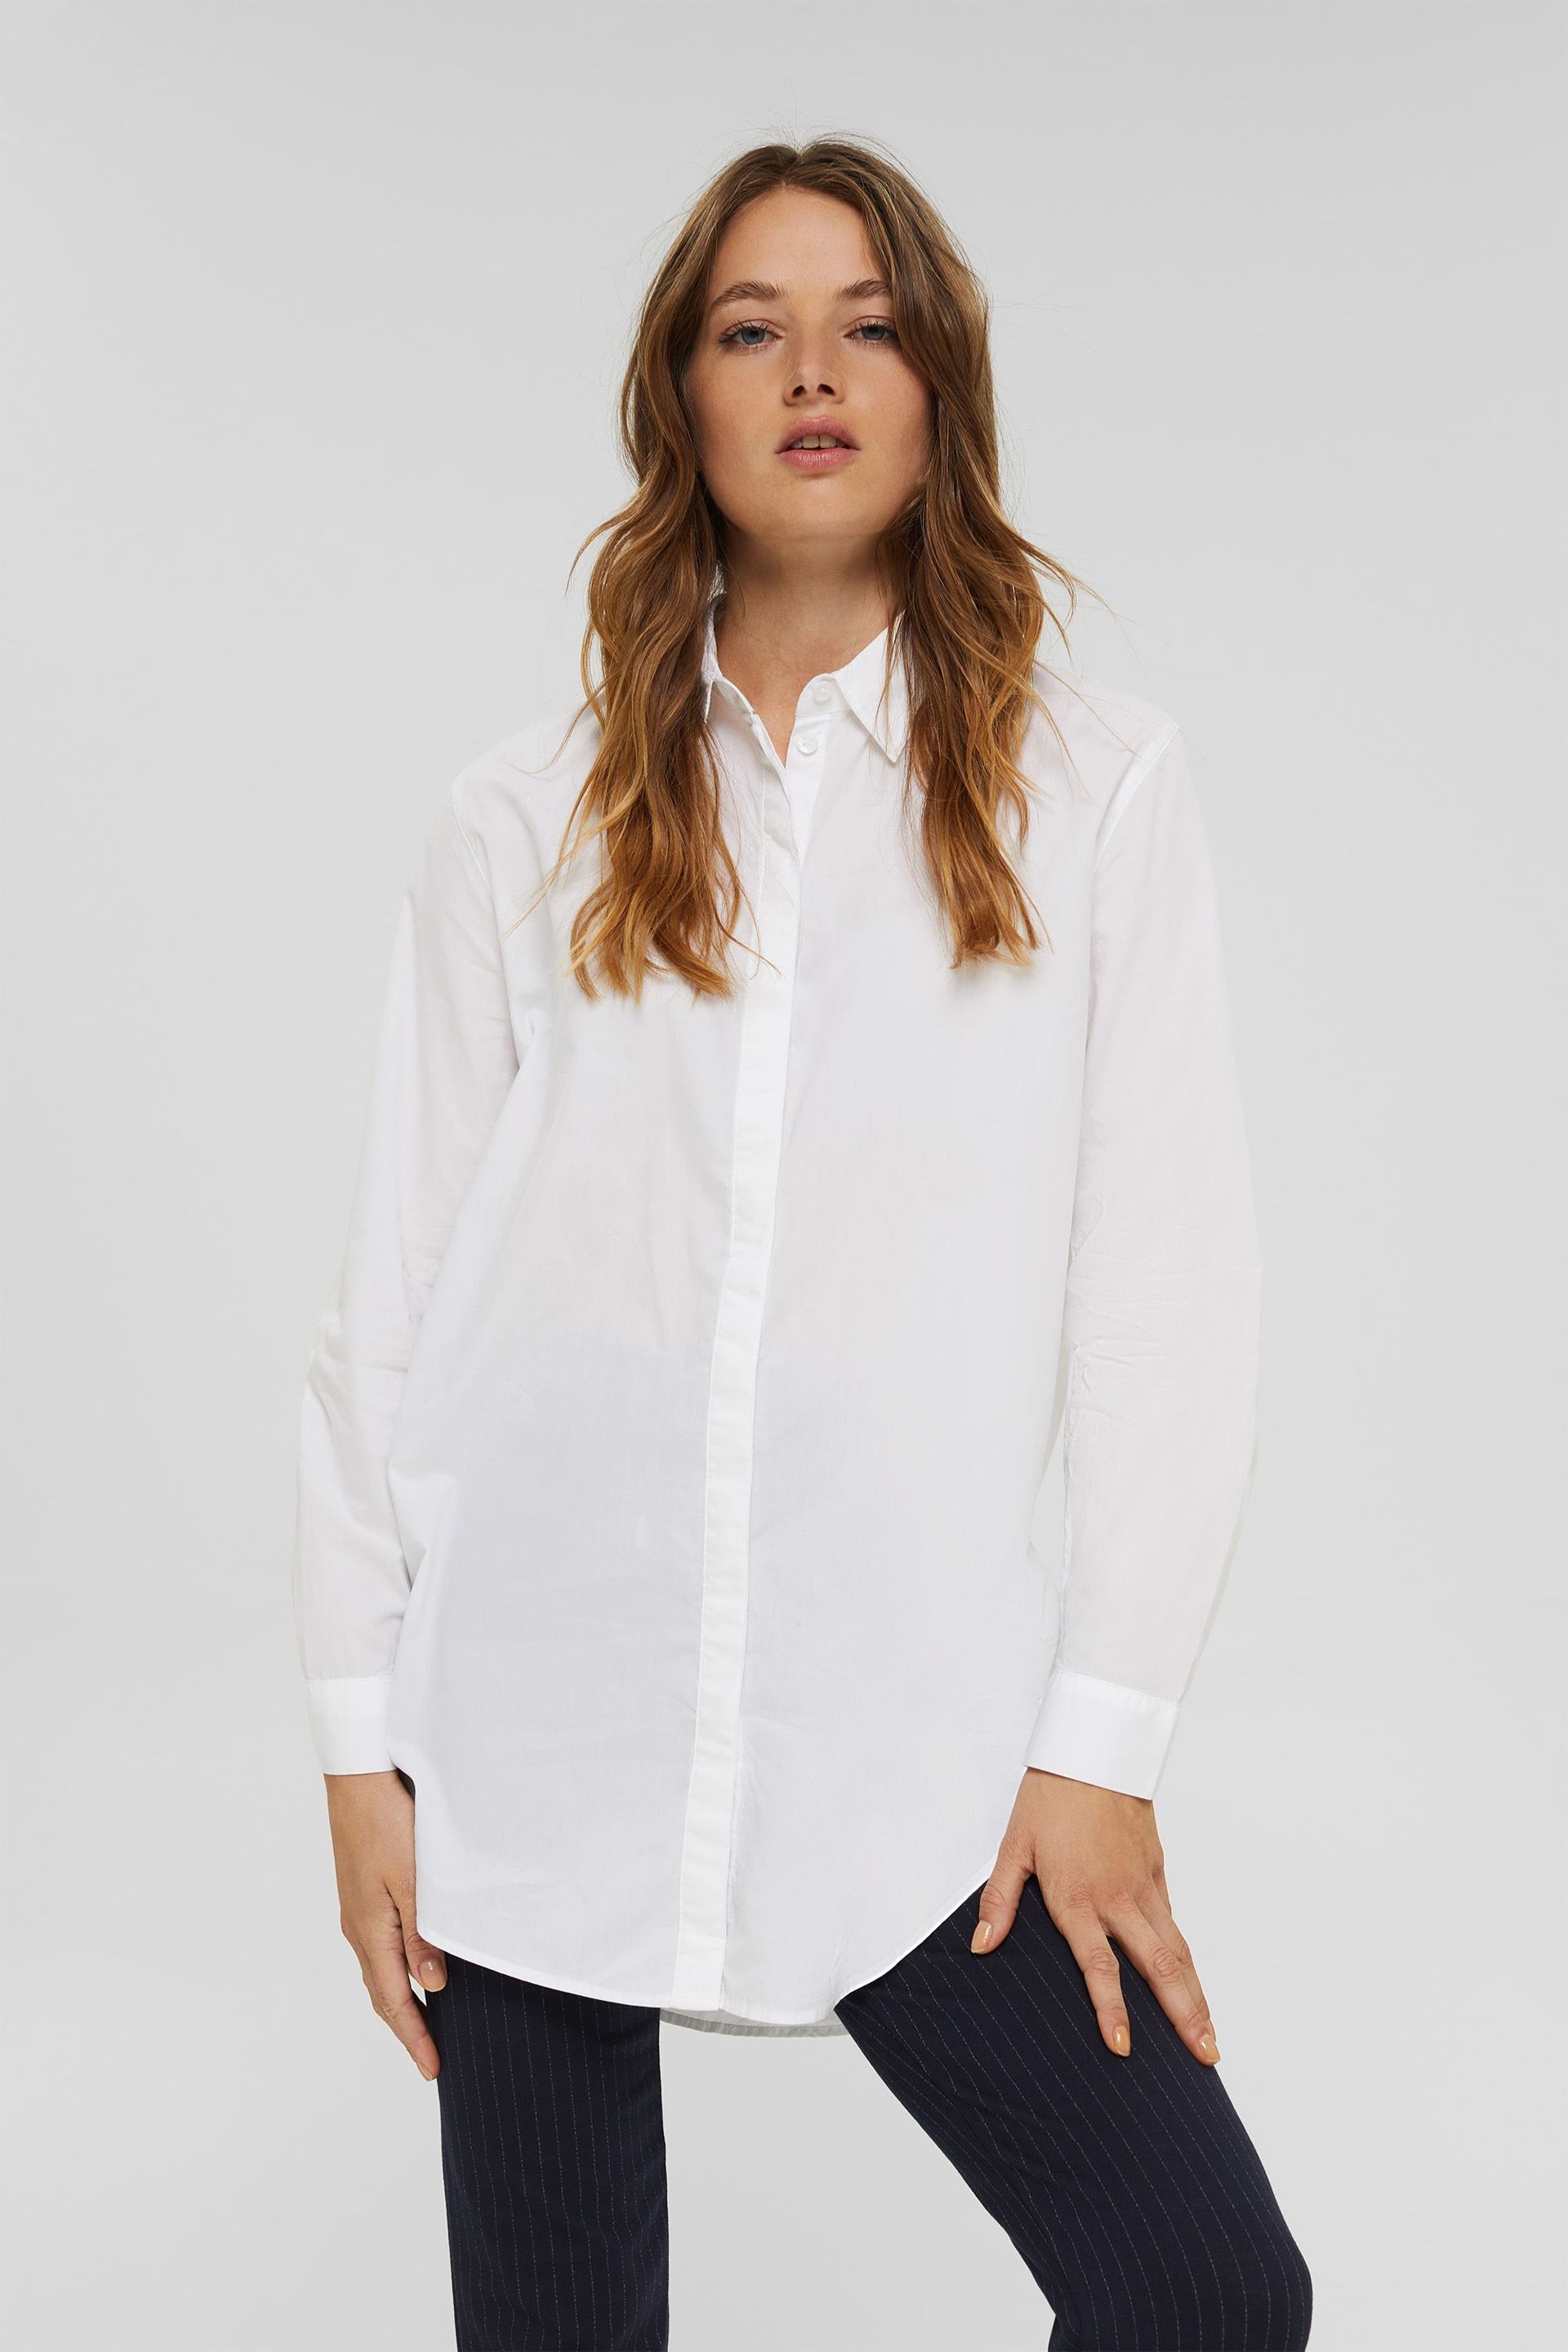 Vulkanisch Vergelijkbaar Verleiden Esprit lange witte blouse 991EE1F331 100